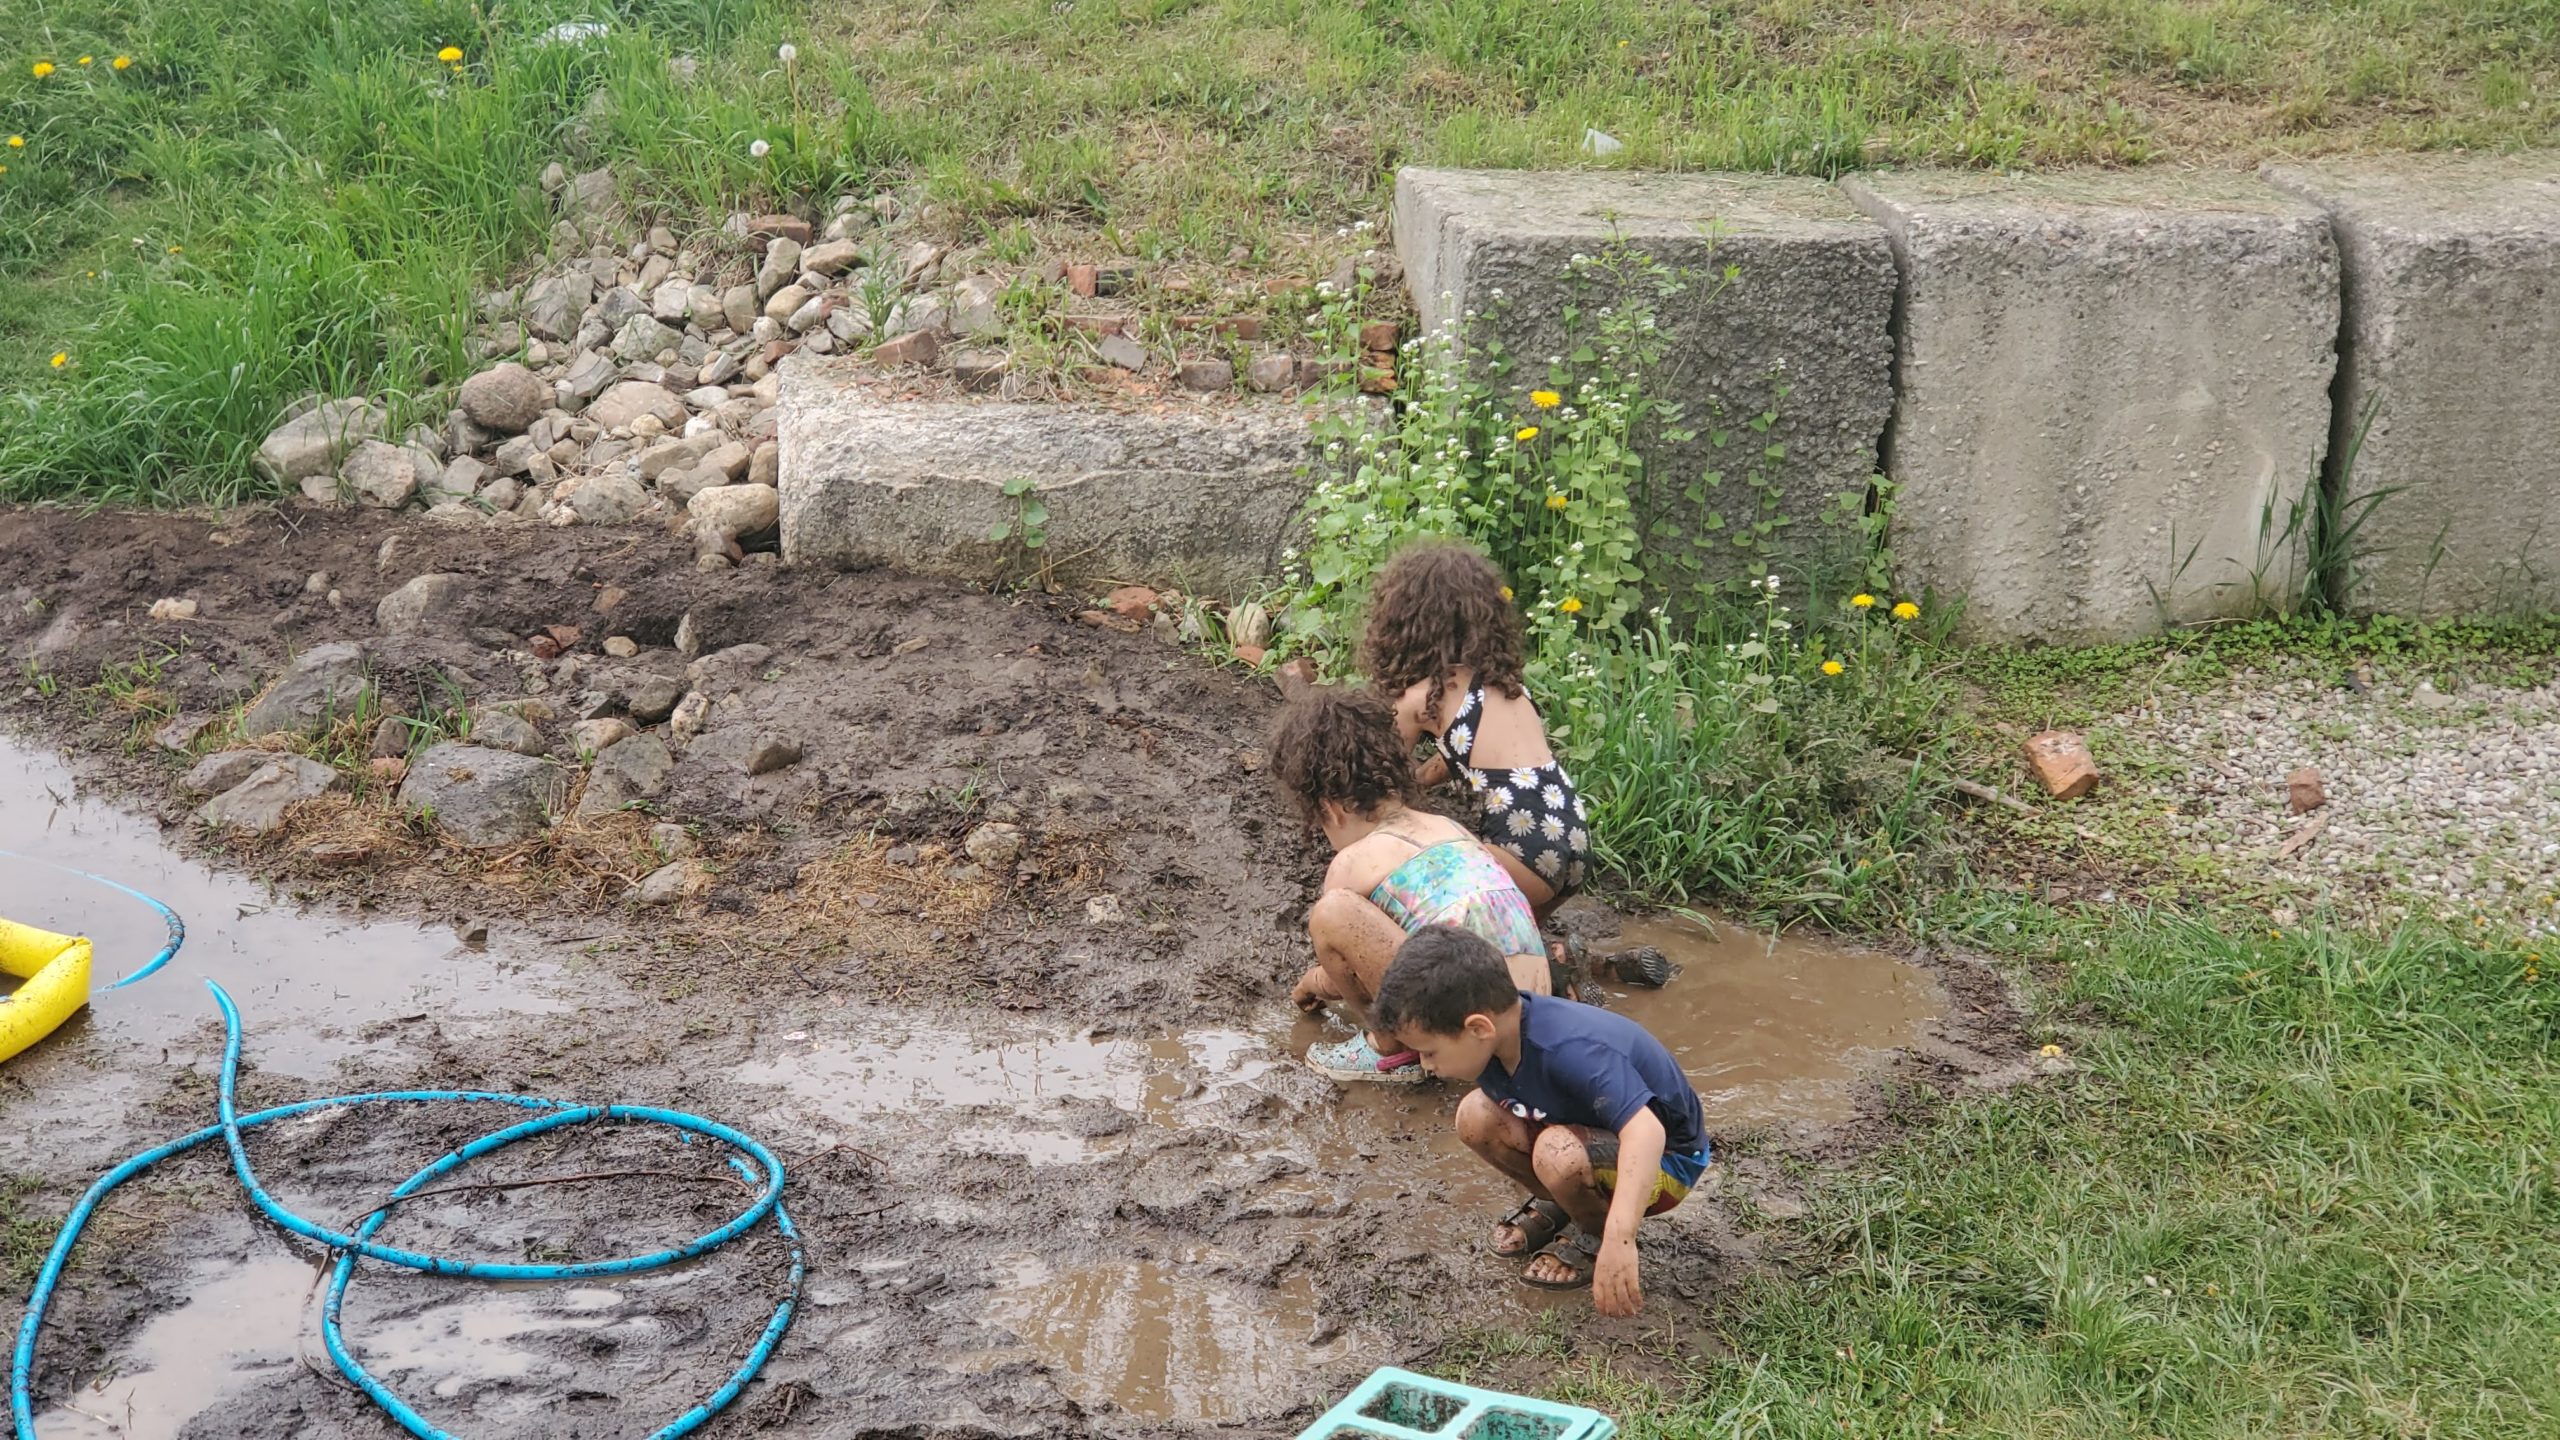 mud play at nature camp summer camp